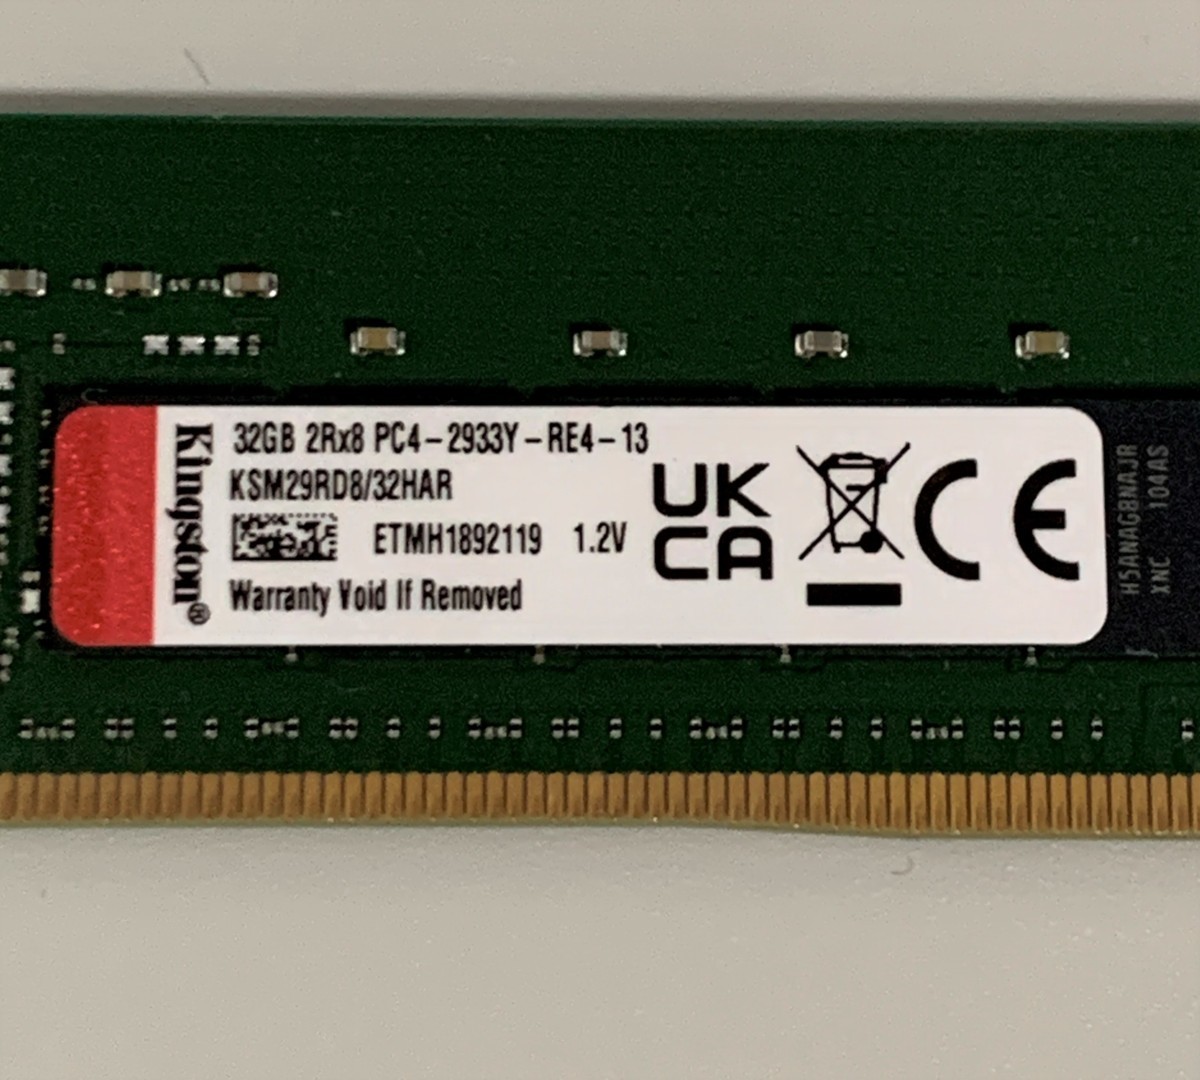 [ гарантия работы нет * проверка час BIOS отображать возможно / сервер для ]Kingston DDR4 32GB 1 листов KSM29RD8/32HAR(ECC Registered,2Rx8,PC4-2933Y-RE4-13)